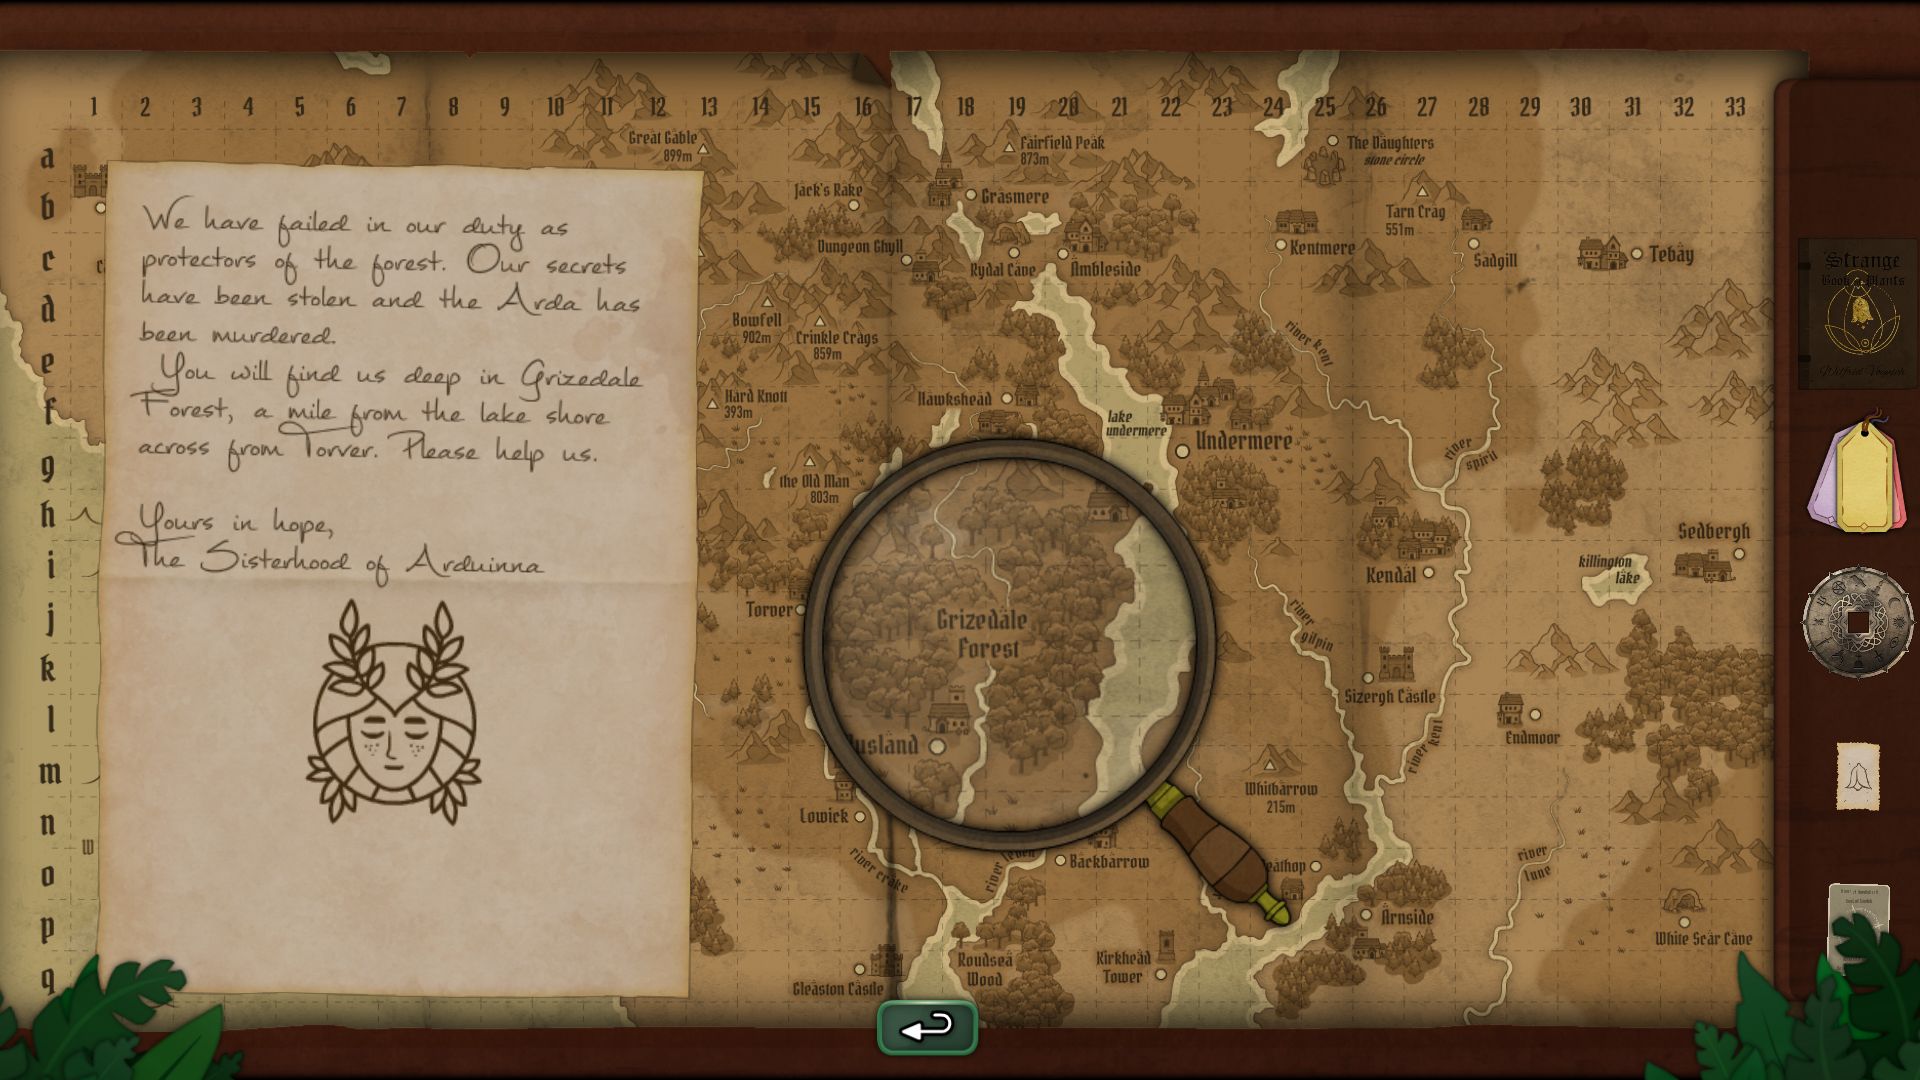 Uma captura de tela mostrando o mapa da área em Strange Horticulture, uma versão alternativa de The Lake District.  Eles estão usando uma lupa para localizar uma área indicada em uma carta enviada a eles